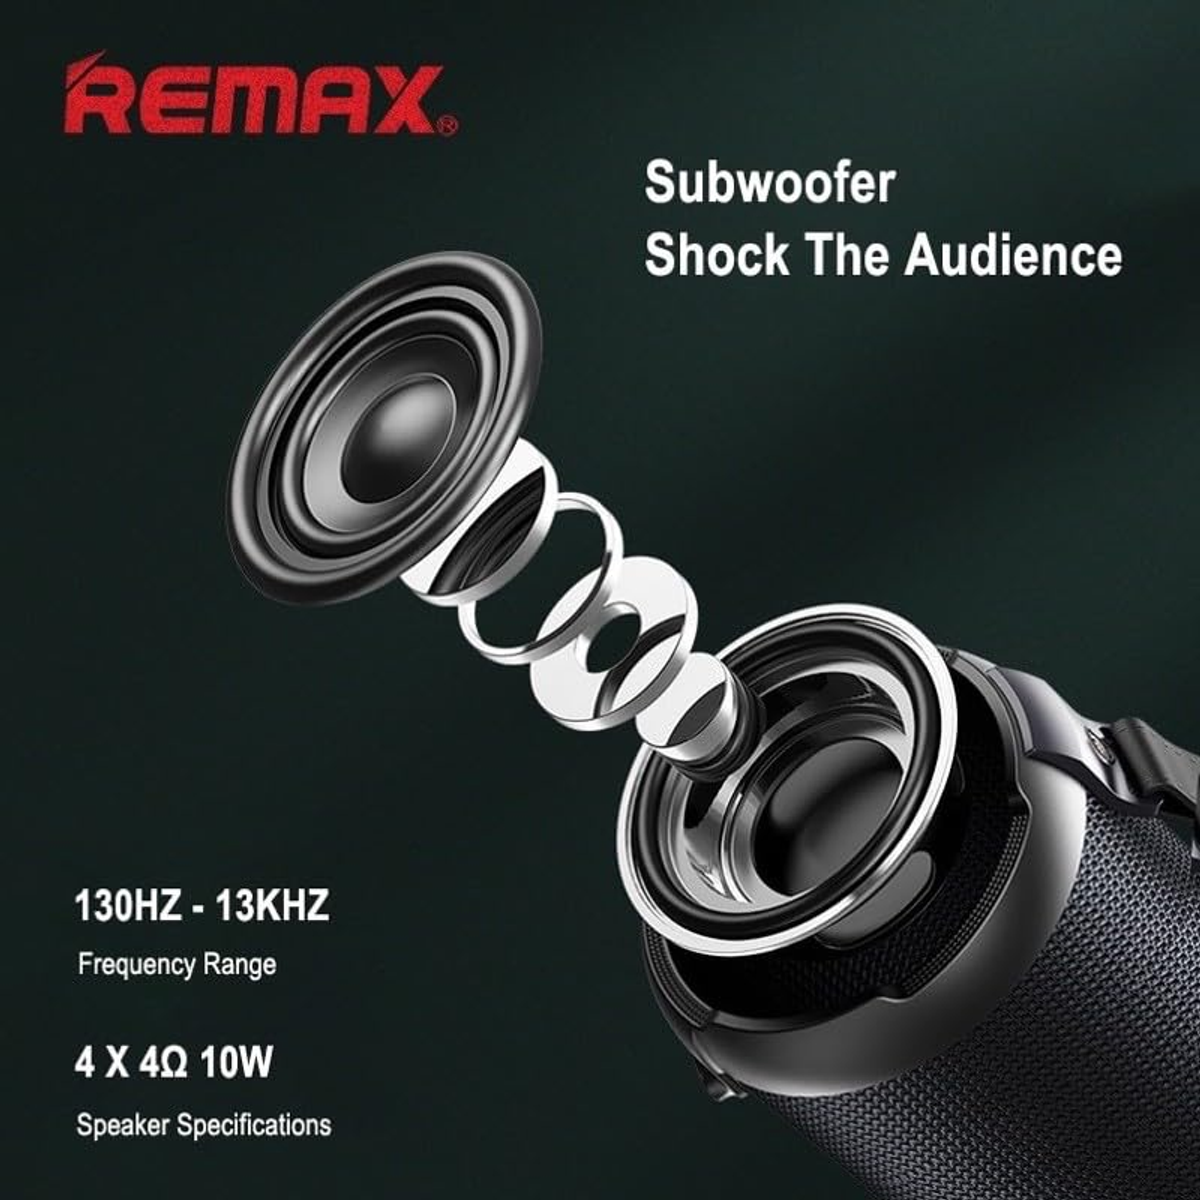 Schwarz Bluetooth RB-M43 Lautsprecher, REMAX